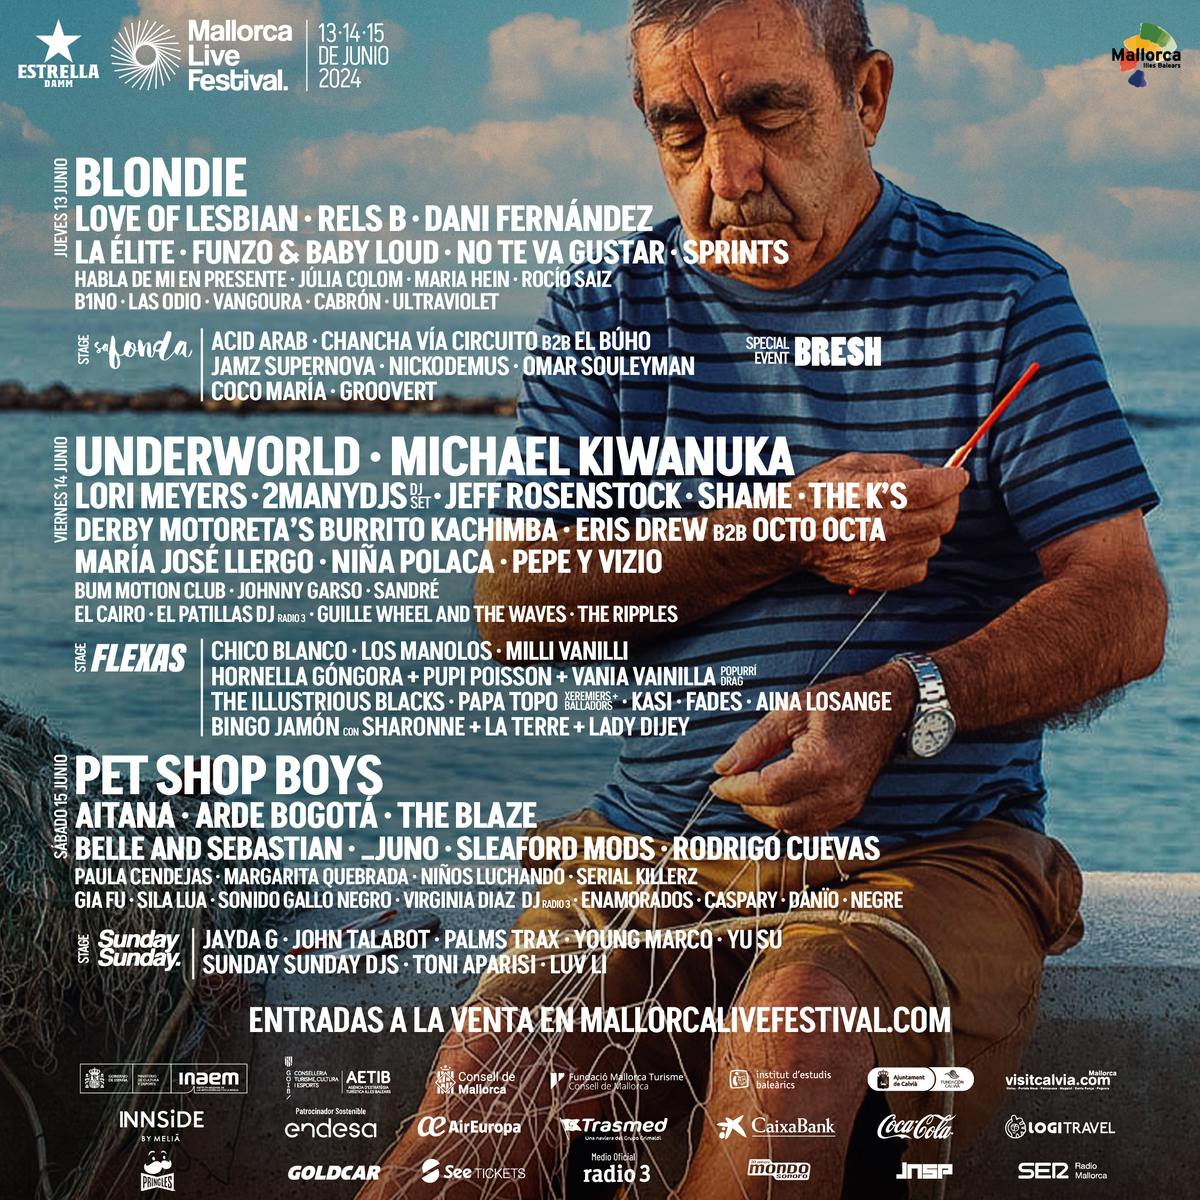 Biglietto da 2 giorni (giovedì+sabato) Mallorca Live Festival 2024